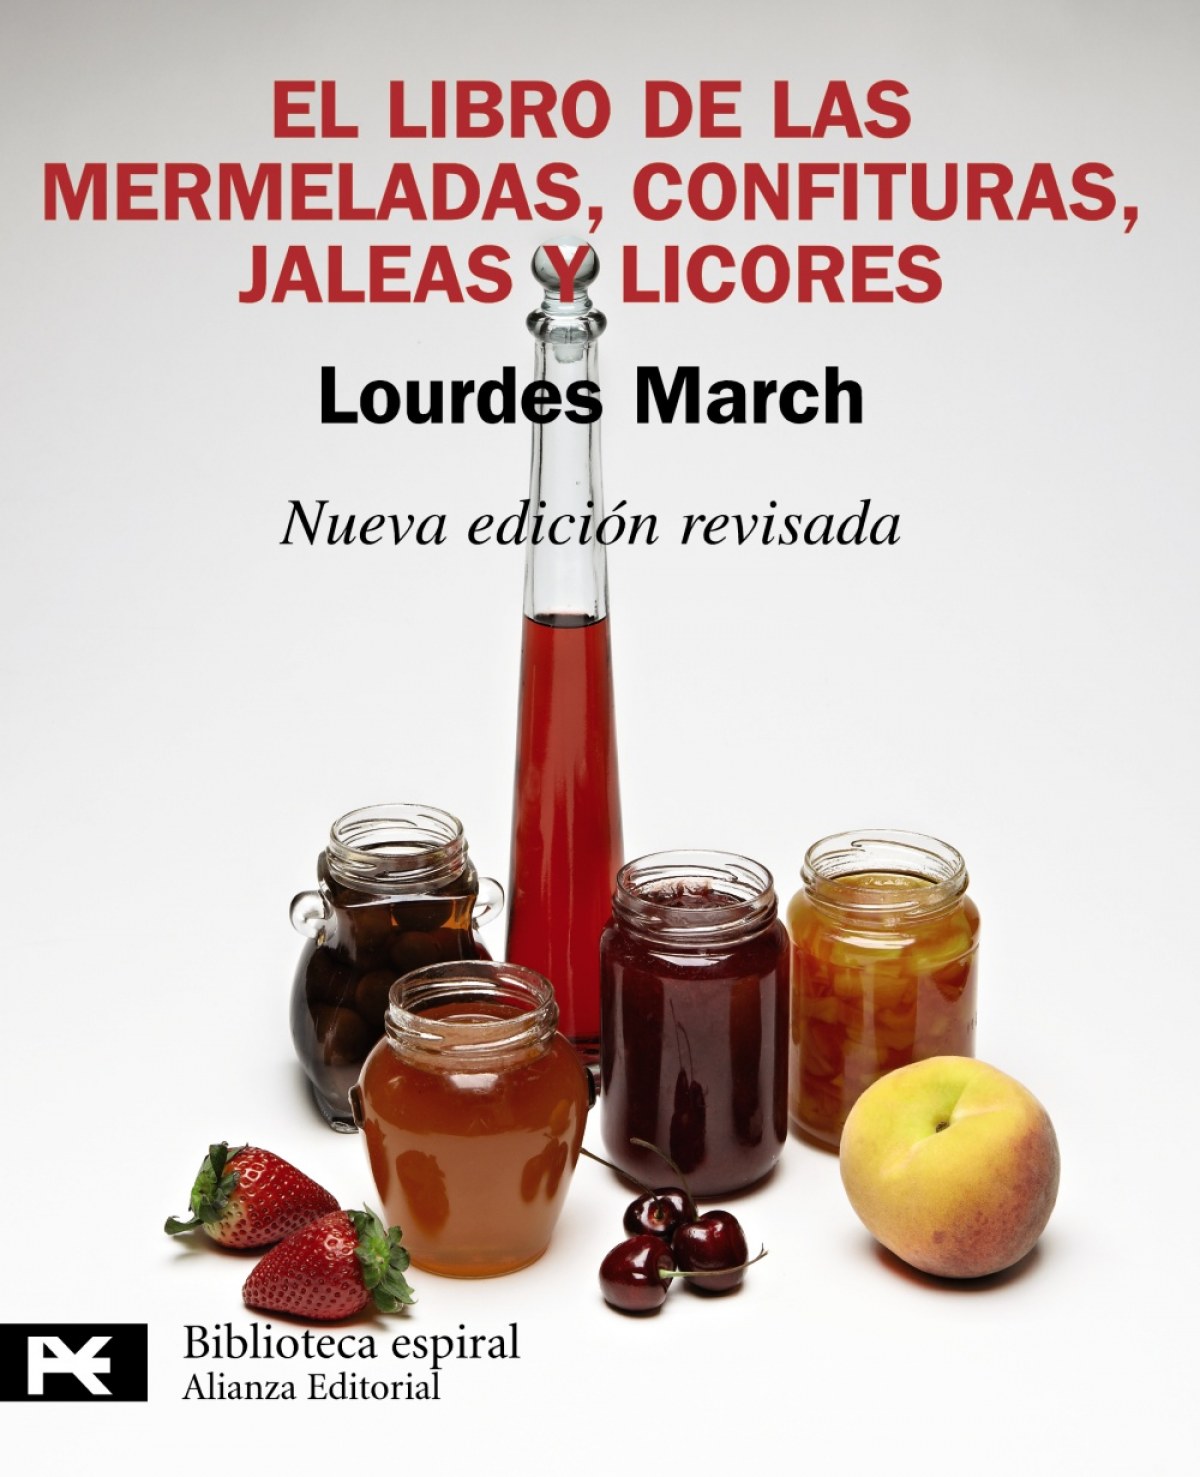 El libro de las mermeladas, confituras, jaleas y licores - March Ferrer, Lourdes